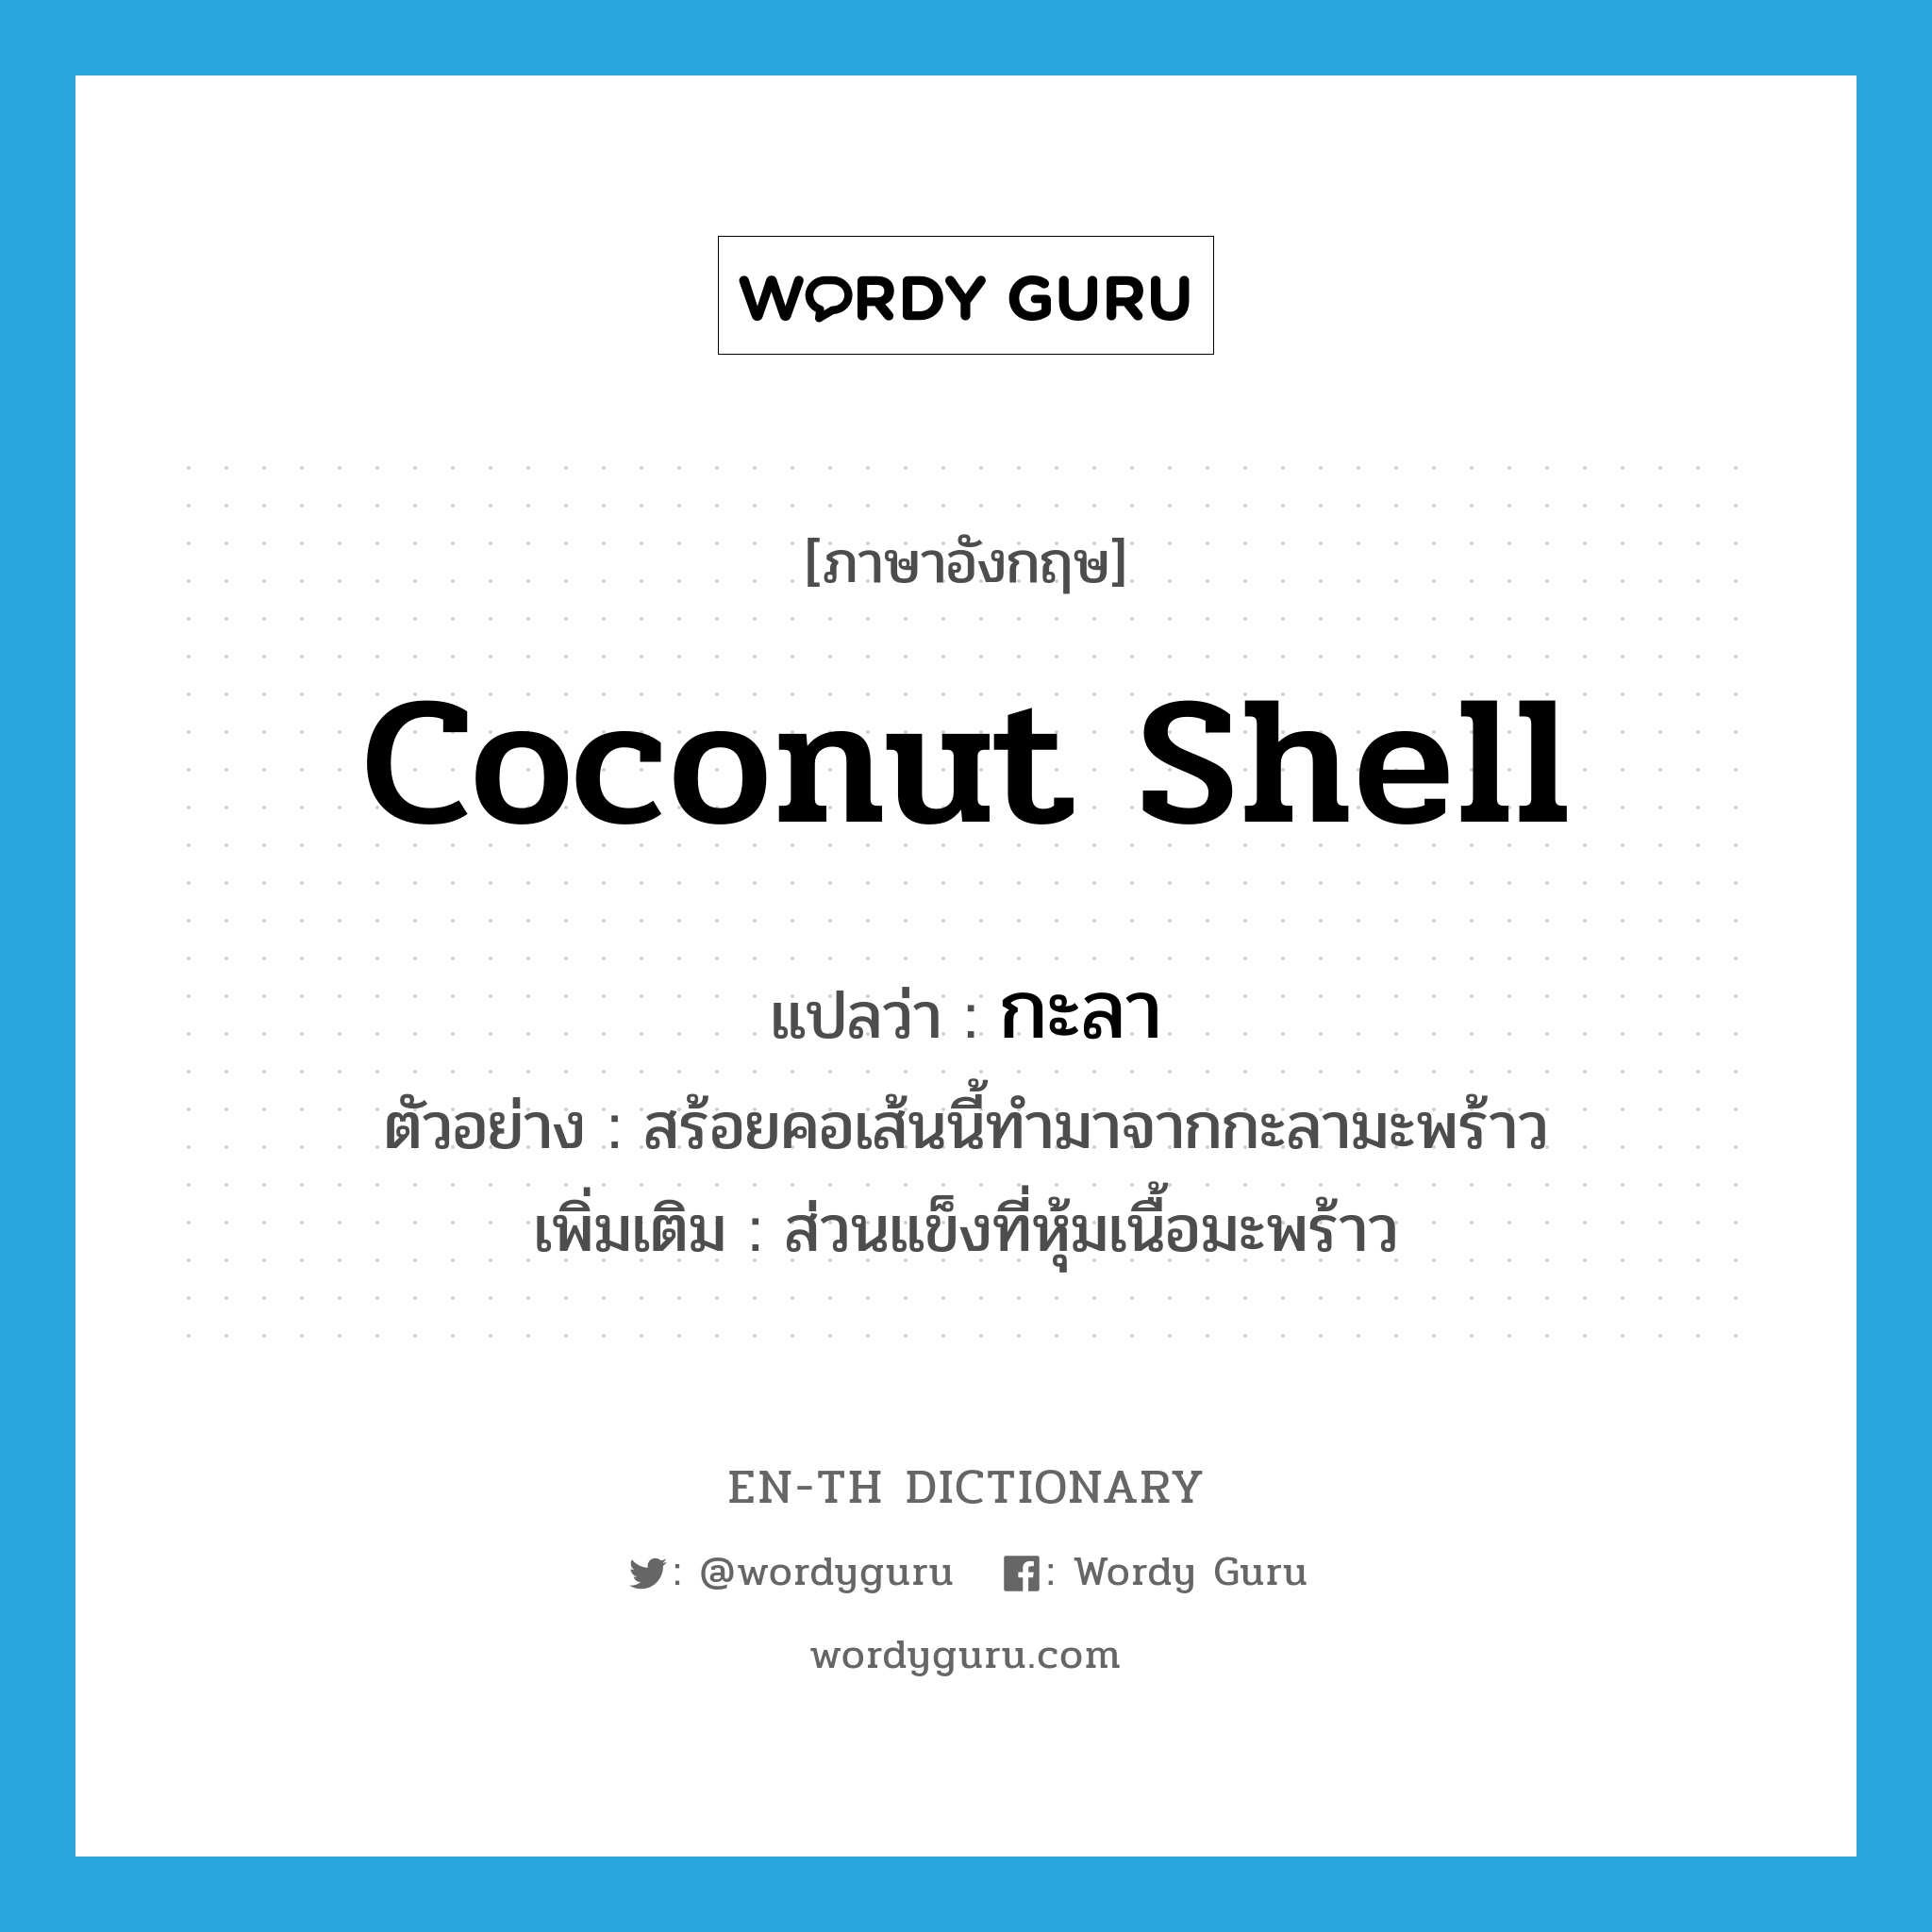 กะลา ภาษาอังกฤษ?, คำศัพท์ภาษาอังกฤษ กะลา แปลว่า coconut shell ประเภท N ตัวอย่าง สร้อยคอเส้นนี้ทำมาจากกะลามะพร้าว เพิ่มเติม ส่วนแข็งที่หุ้มเนื้อมะพร้าว หมวด N